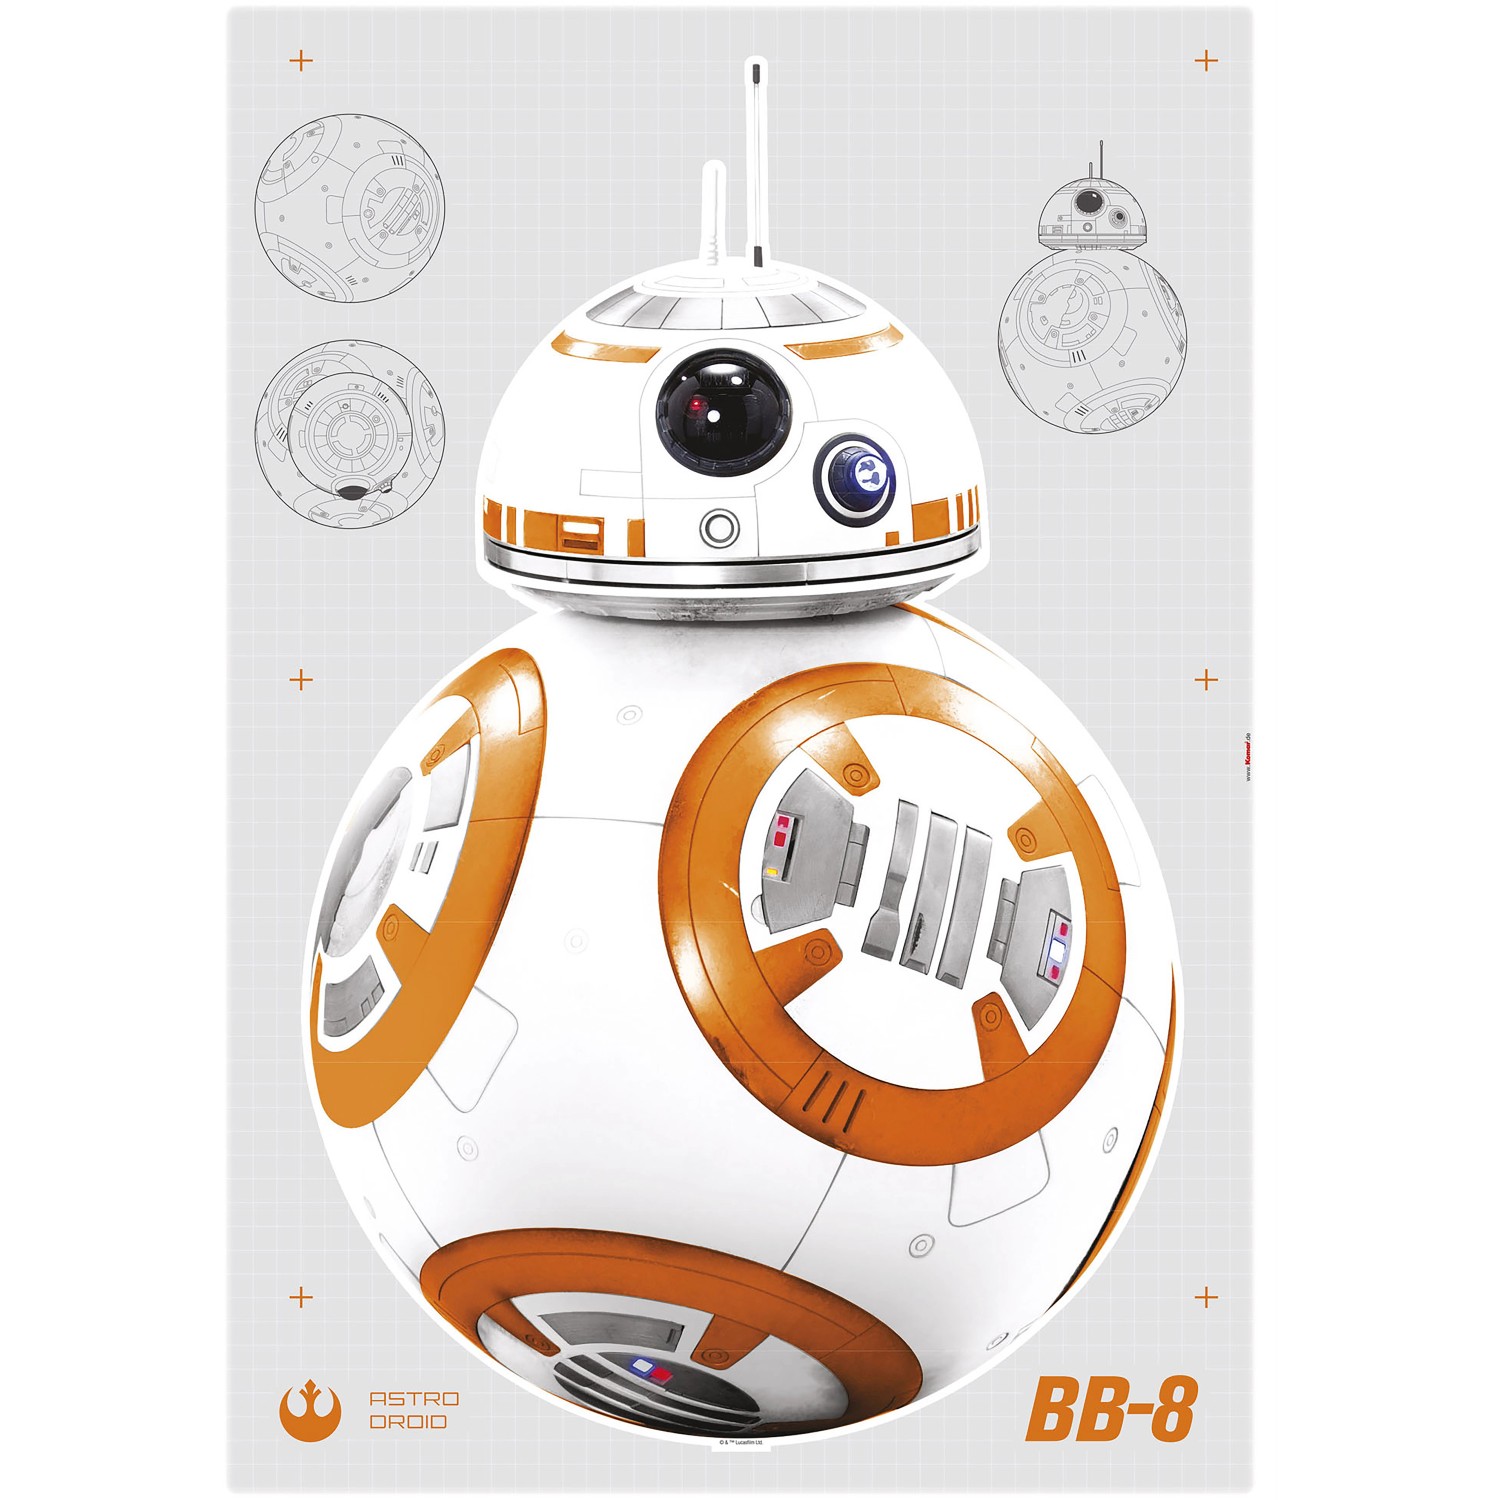 Komar Deko-Sticker Star Wars BB-8 Droid 100 cm x 70 cm